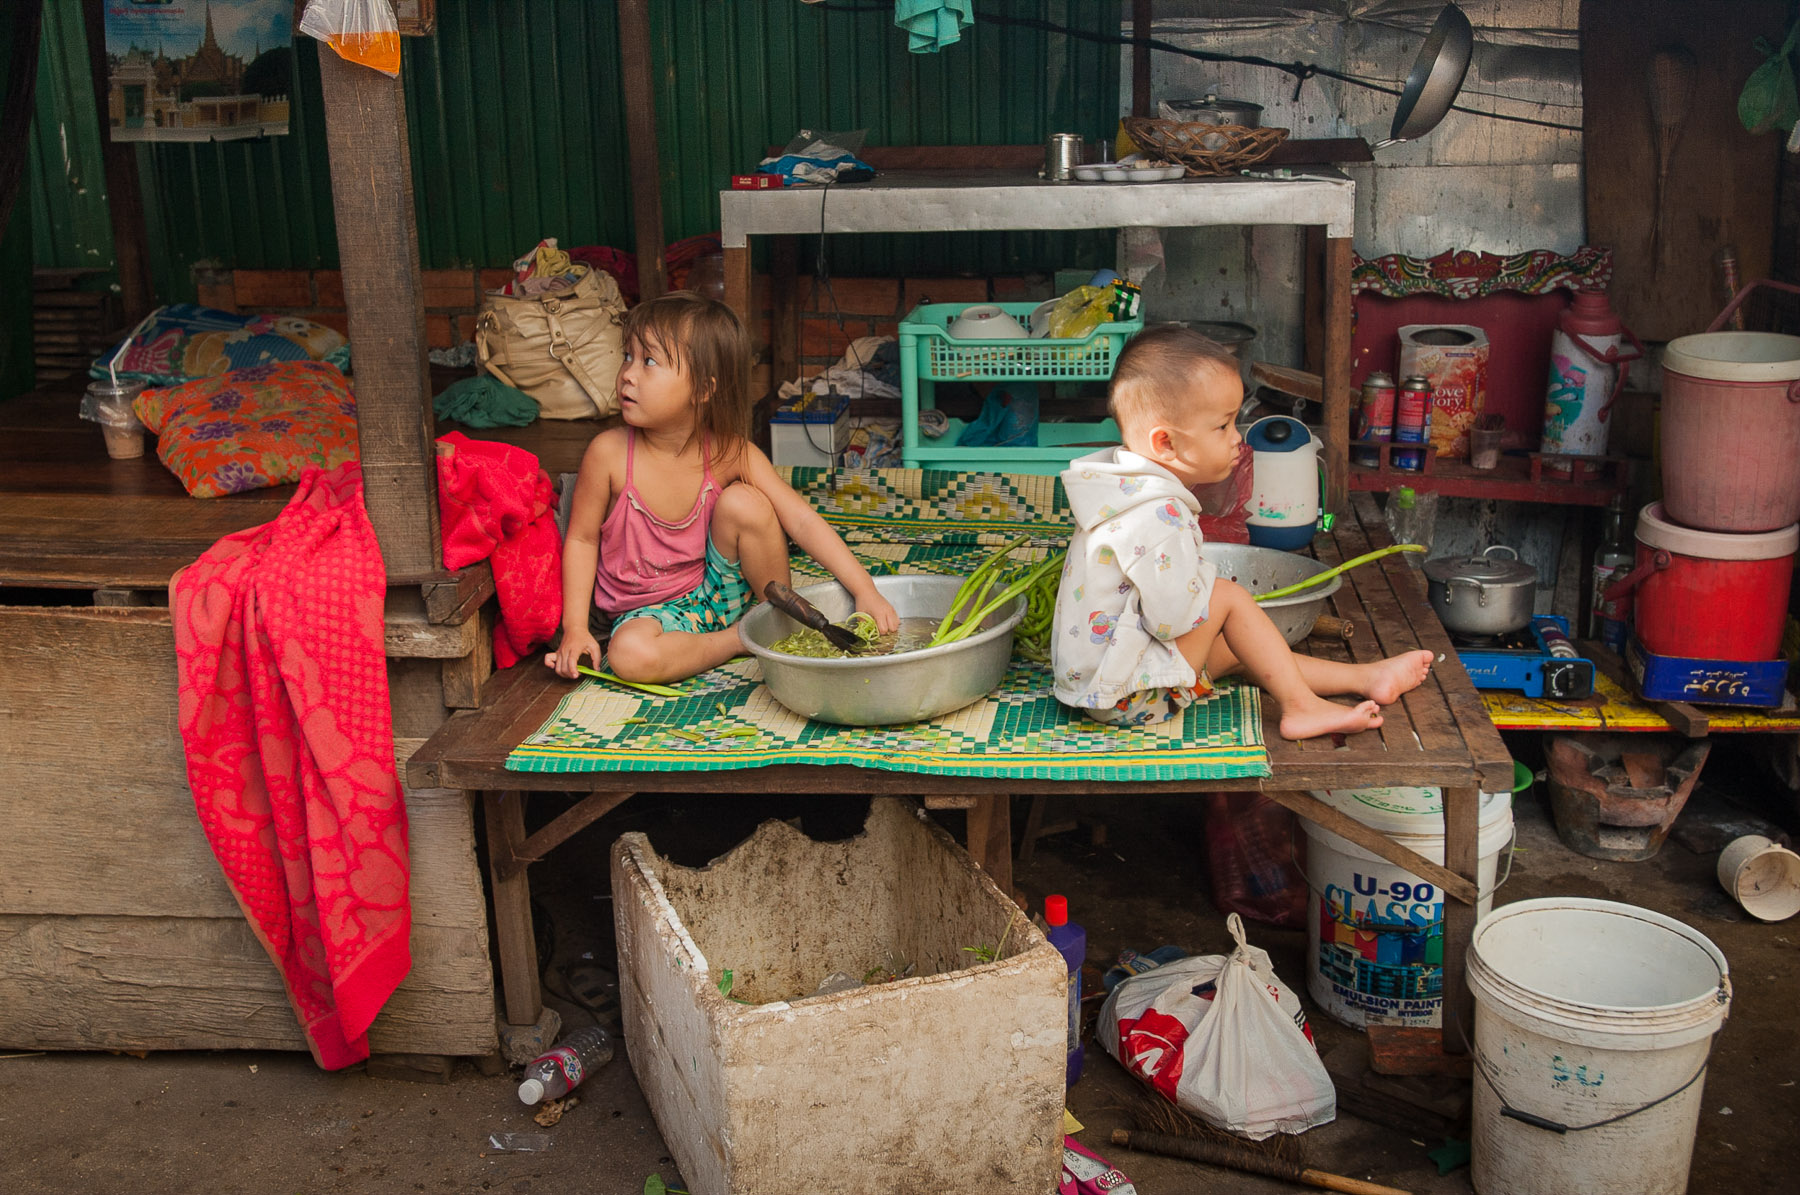 Kids in street market, Phnom Penh Cambodia.